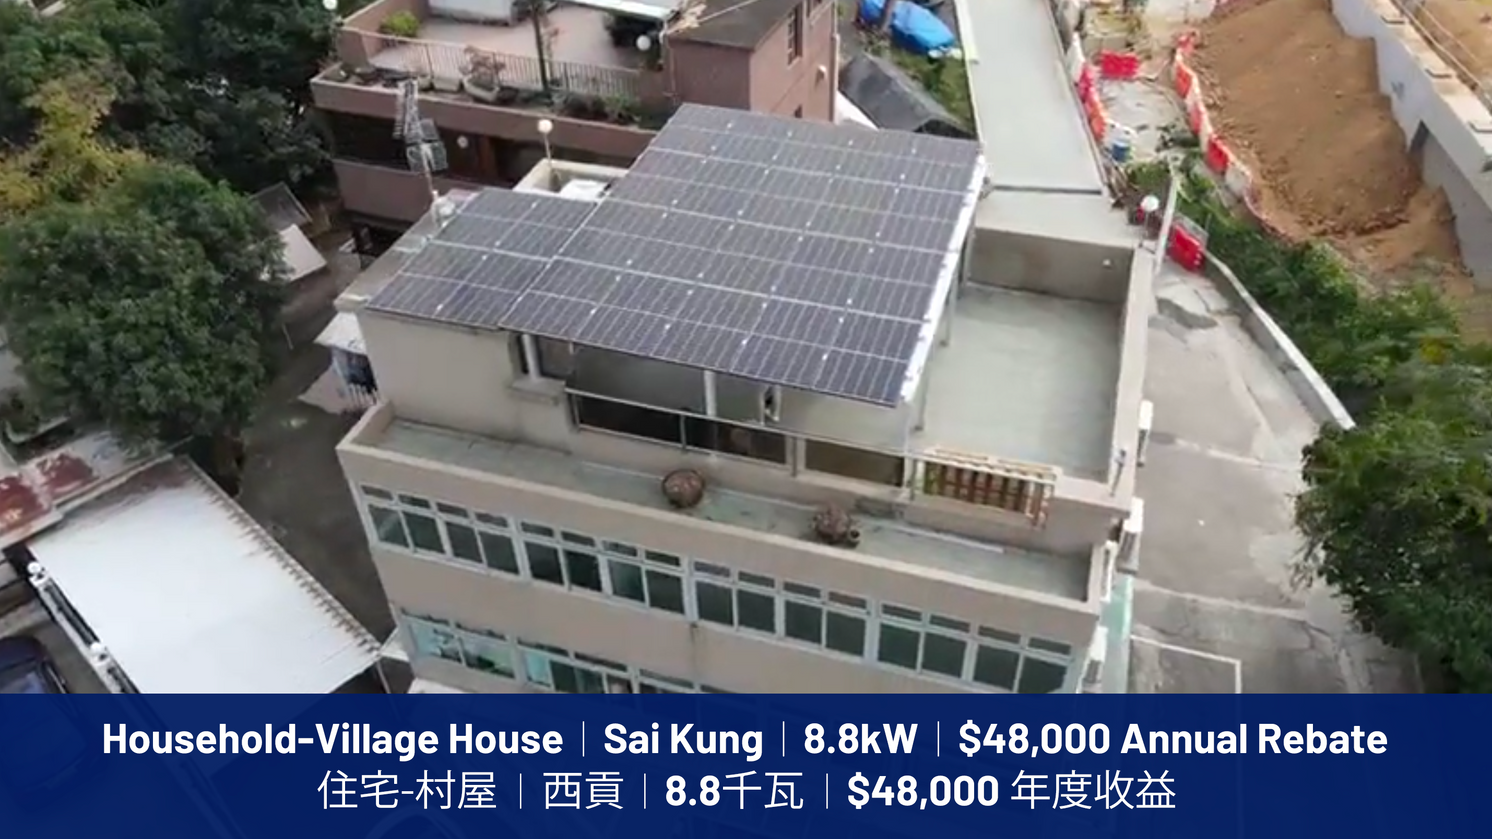 住宅-村屋 | 西貢 | 8.8千瓦 | $48,000 年度收益